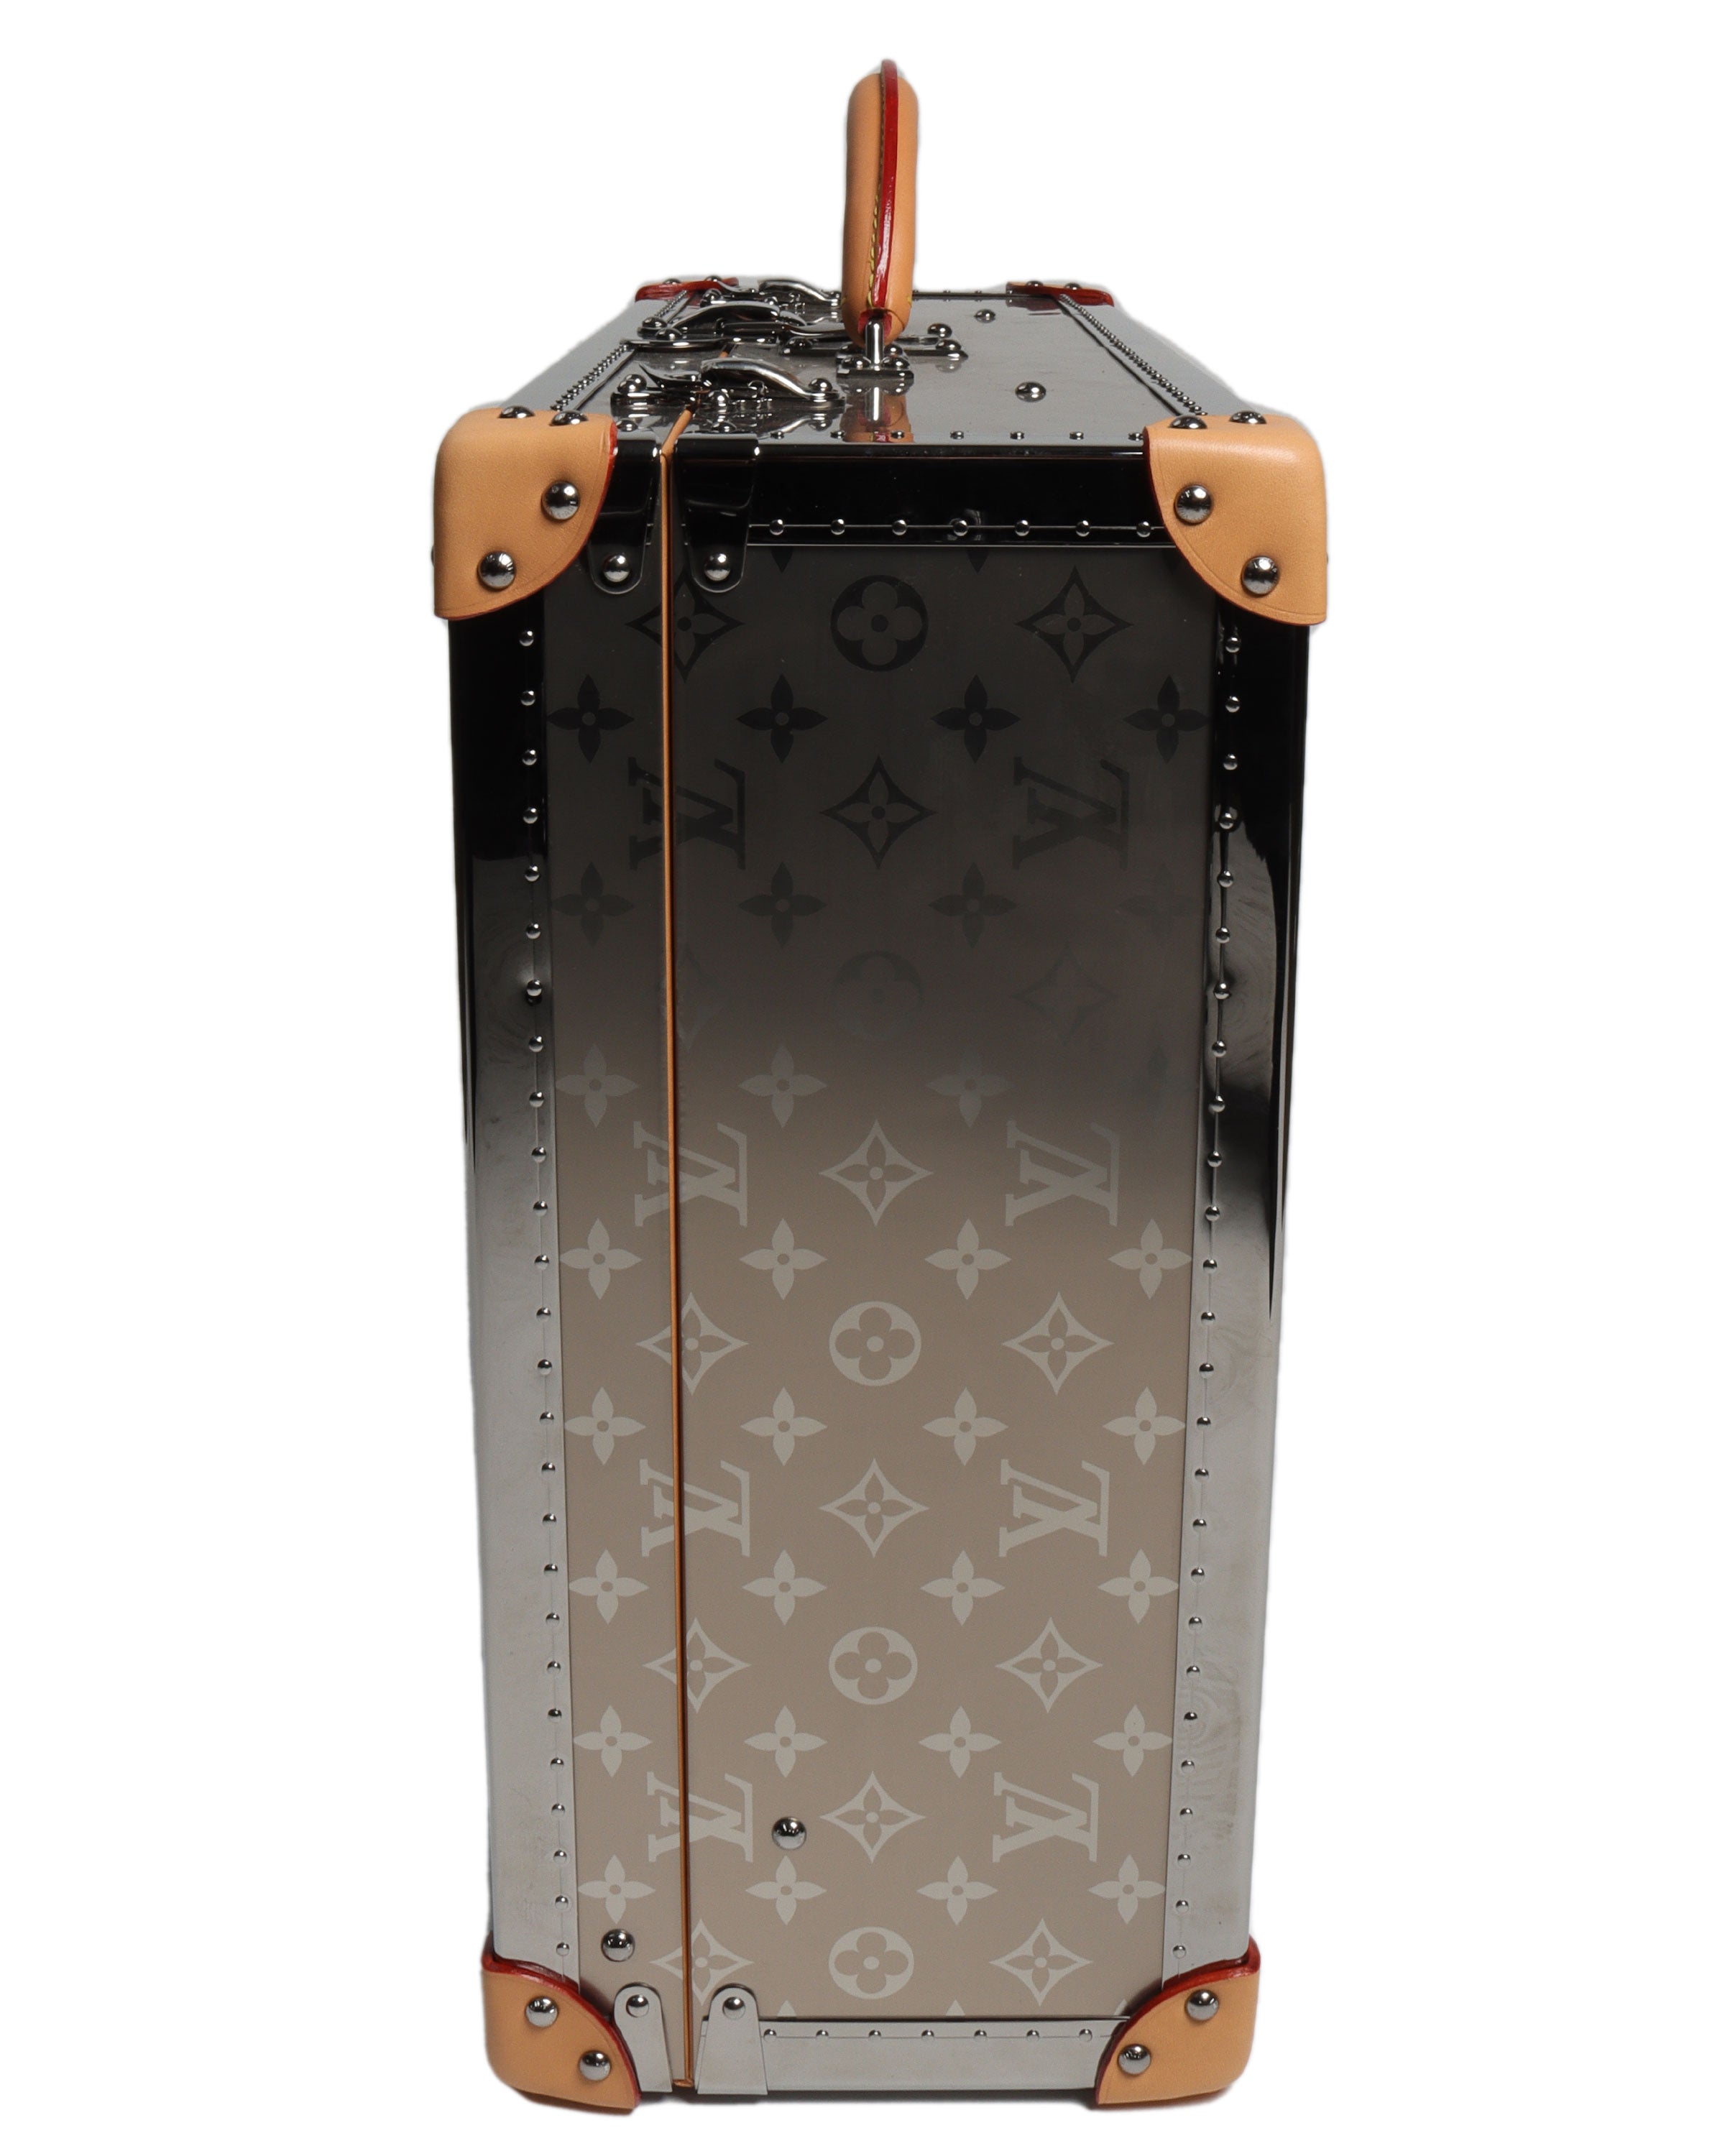 Louis Vuitton Monogram Bisten Trunk 50 - Brown Luggage and Travel